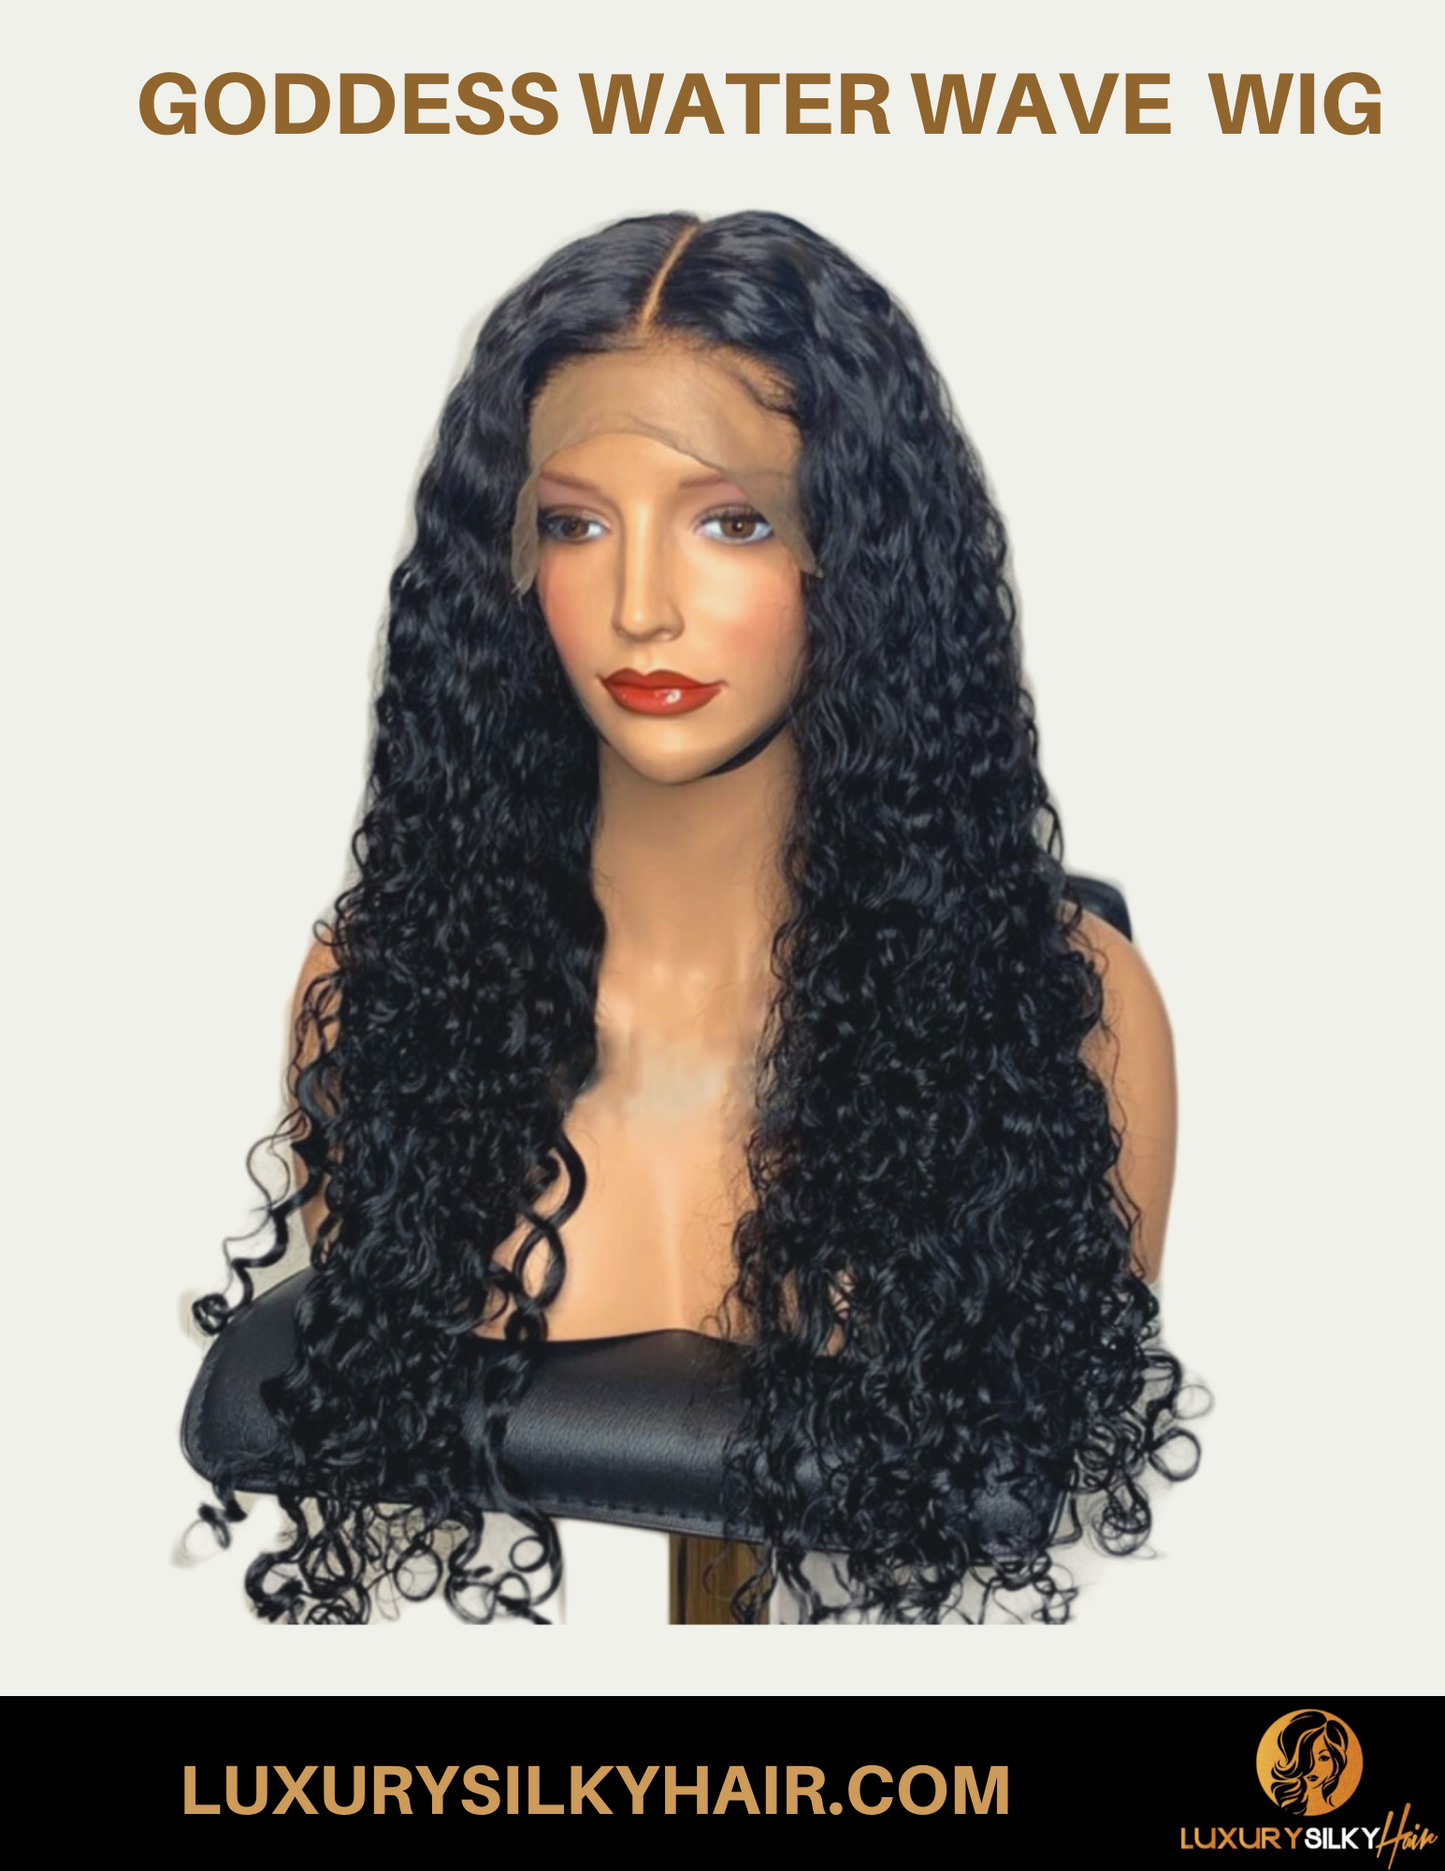 "Goddess" Water Wave Closure & Frontal Wigs - LuxurySilkyHair